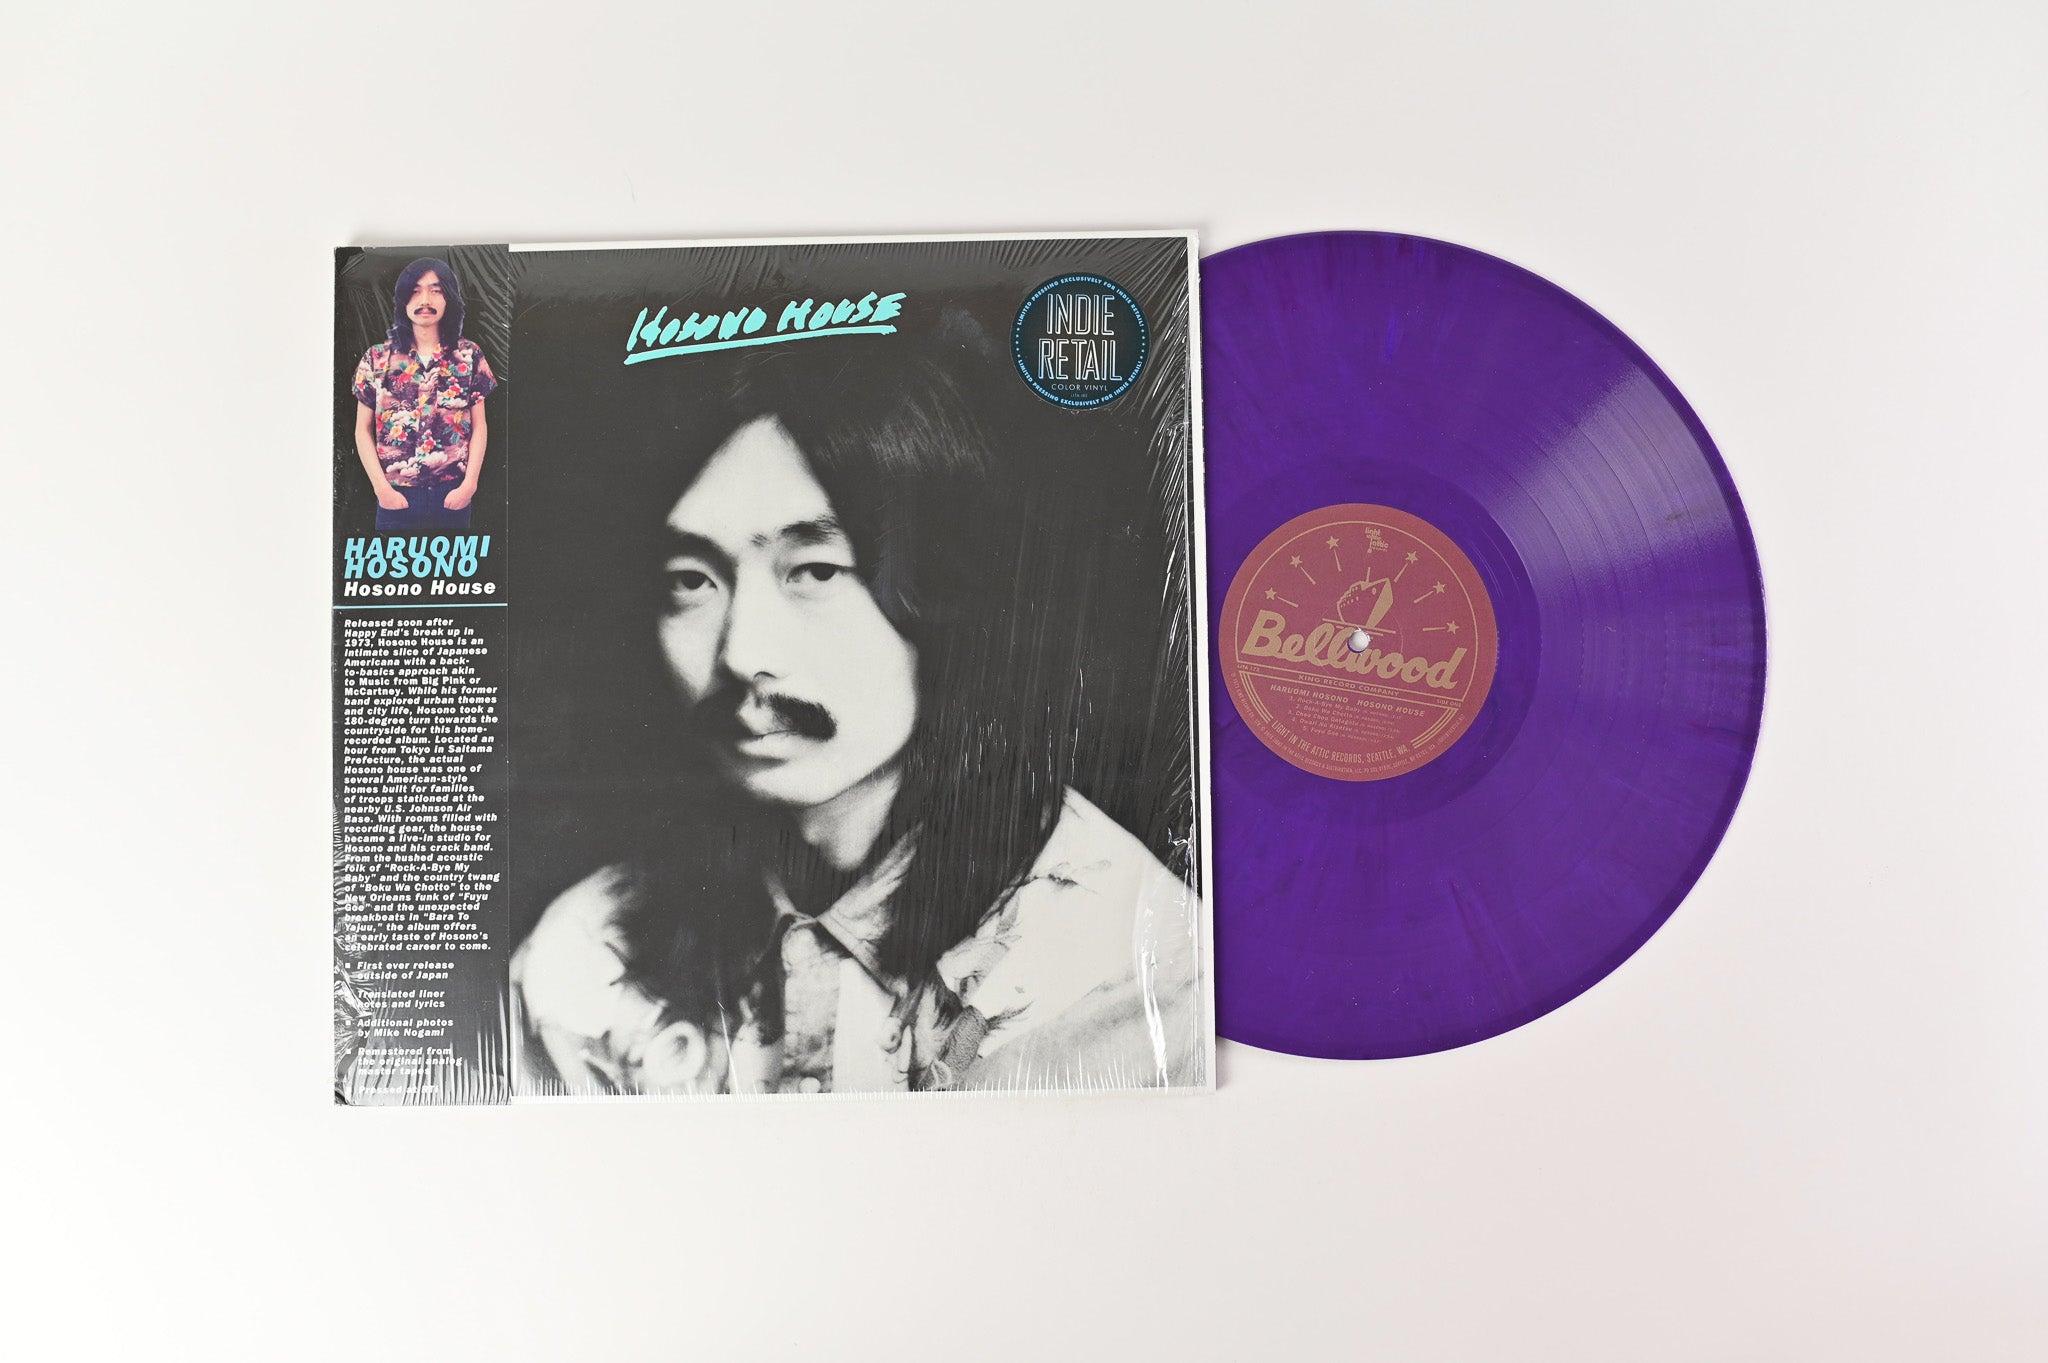 Haruomi Hosono - Hosono House on Light In The Attic Ltd Purple Reissue